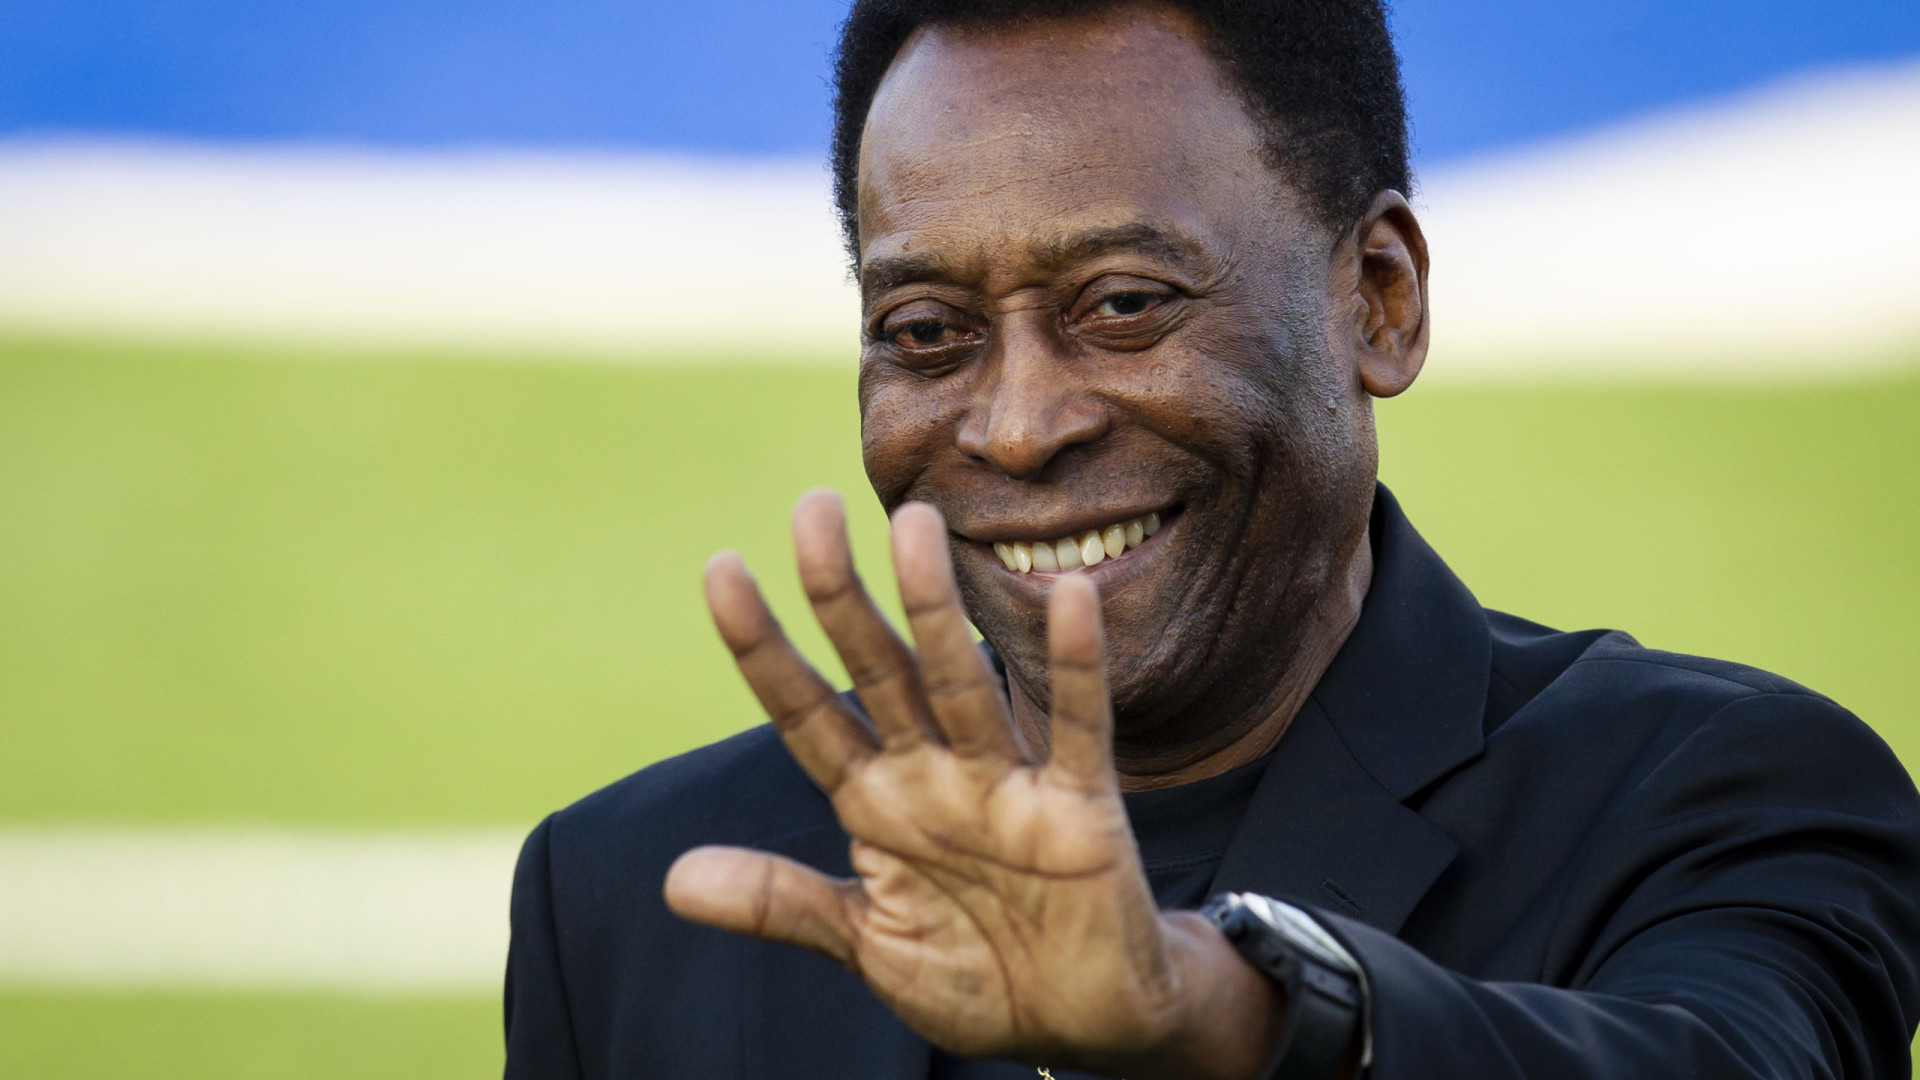 Quantos gols Pelé tem na carreira? Entenda a disparidade entre as contagens